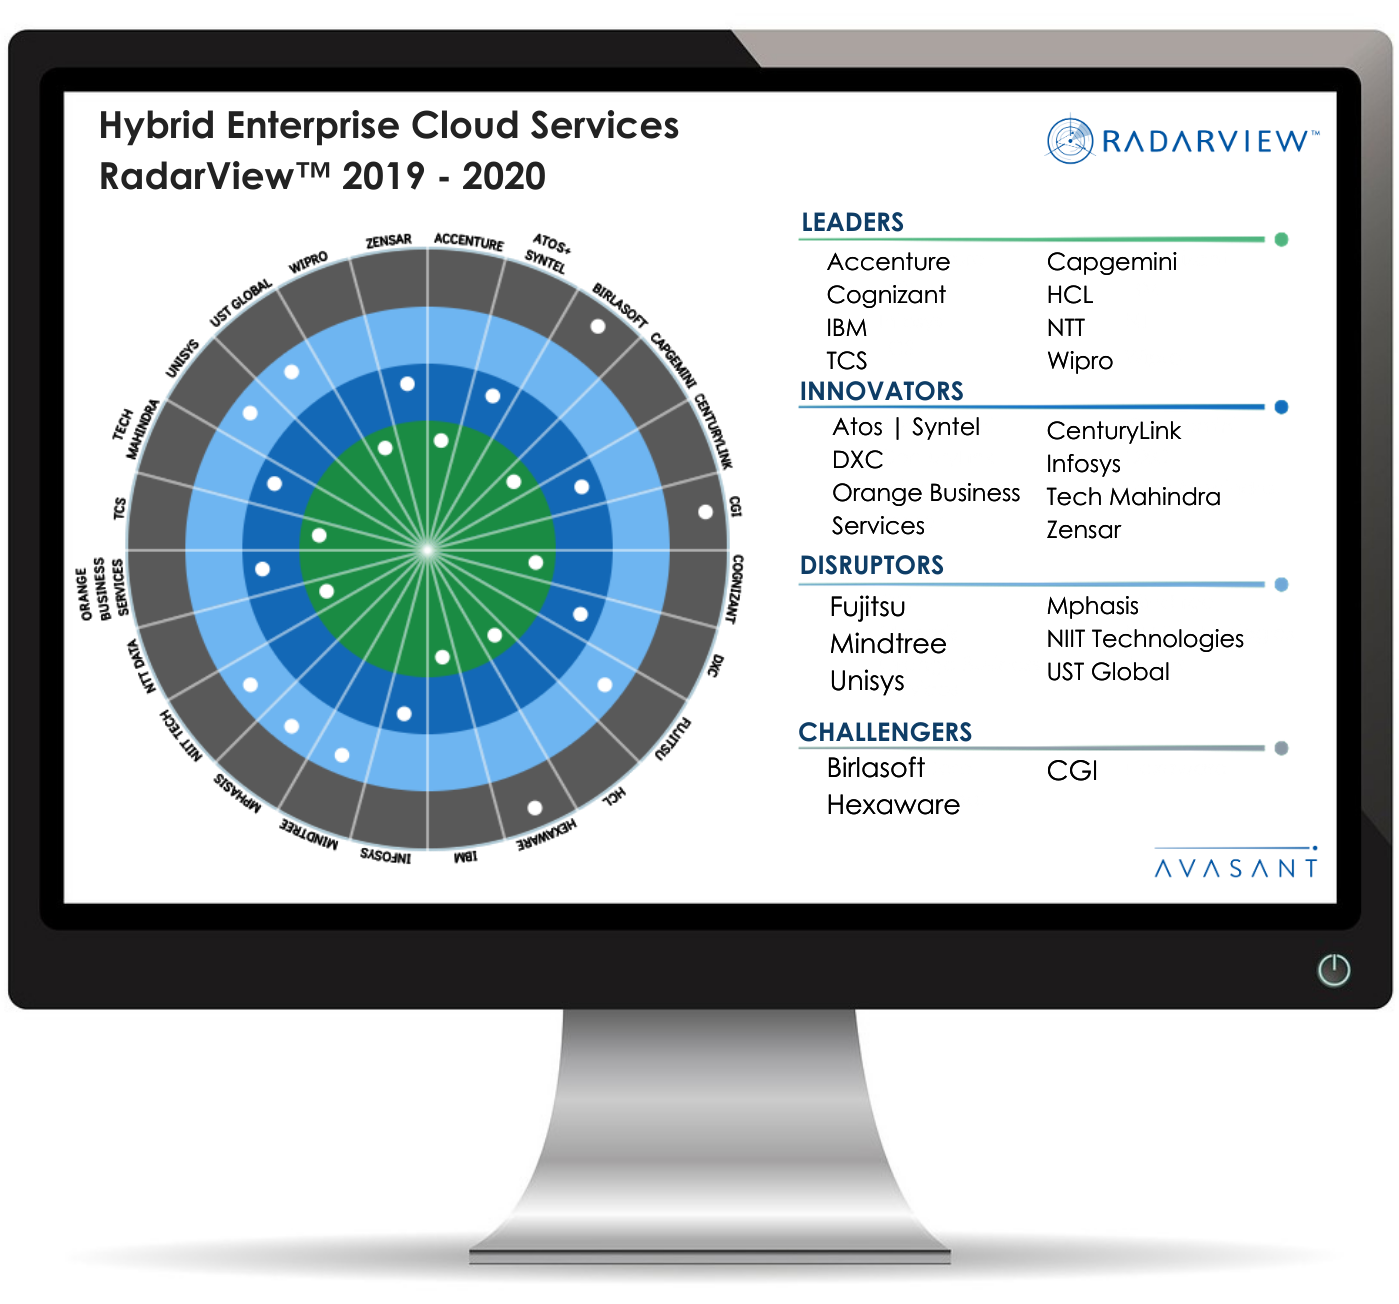 HEC Web Graphic - Hybrid Enterprise Cloud Services RadarView™ 2019-2020 - Mphasis